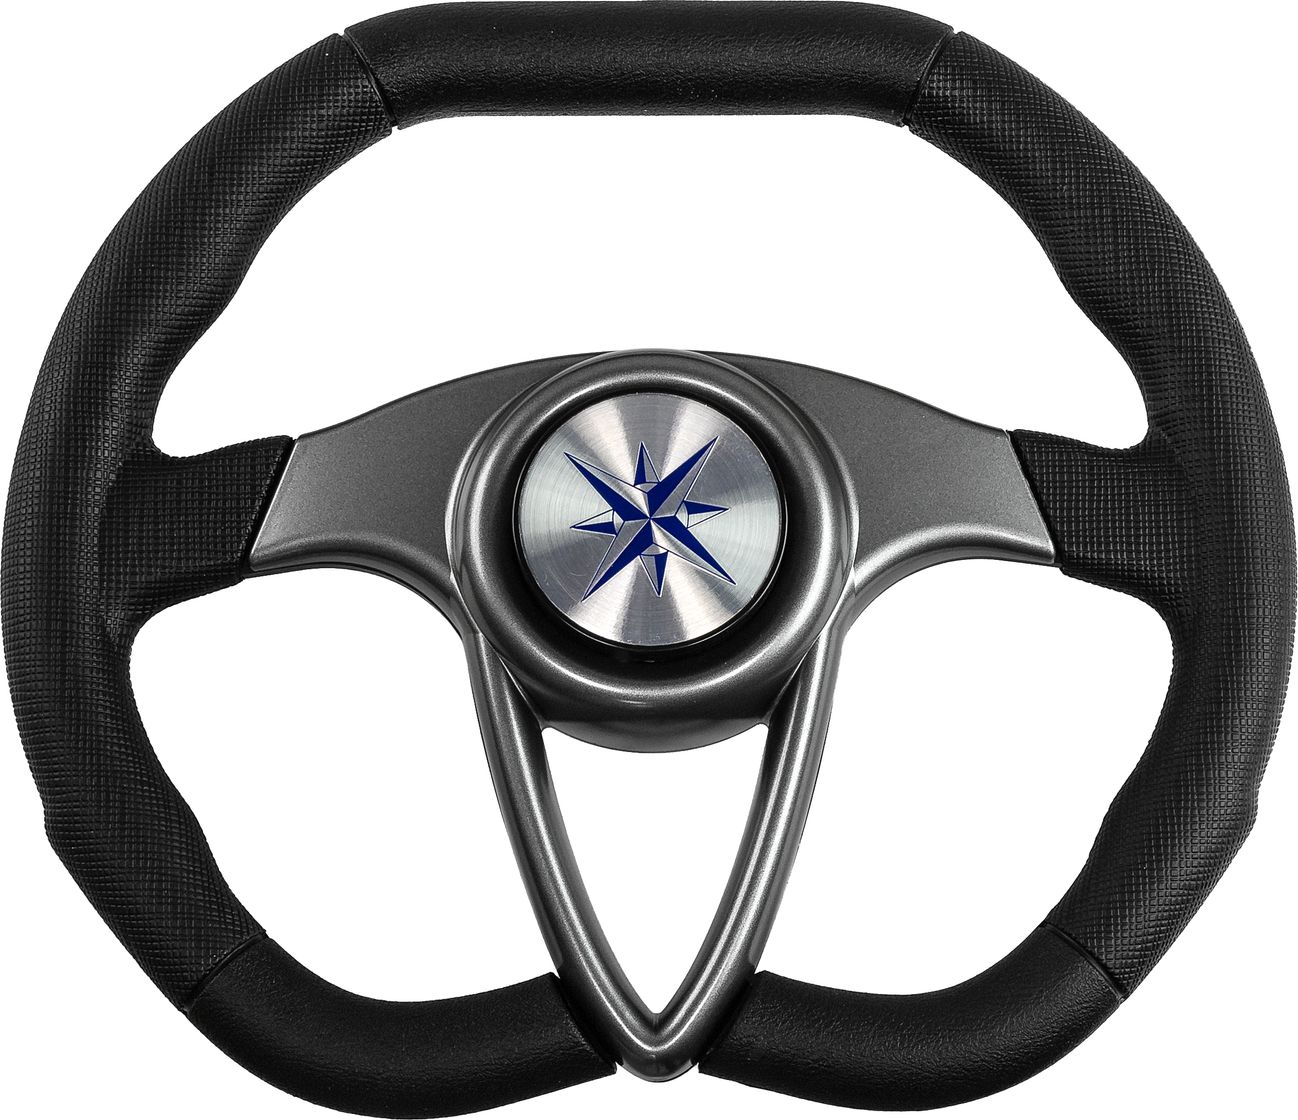 Рулевое колесо BARRACUDA обод черный, спицы серебряные д. 350 мм VN135002-01 рулевое колесо riviera белый обод и спицы д 350 мм vn8001 08